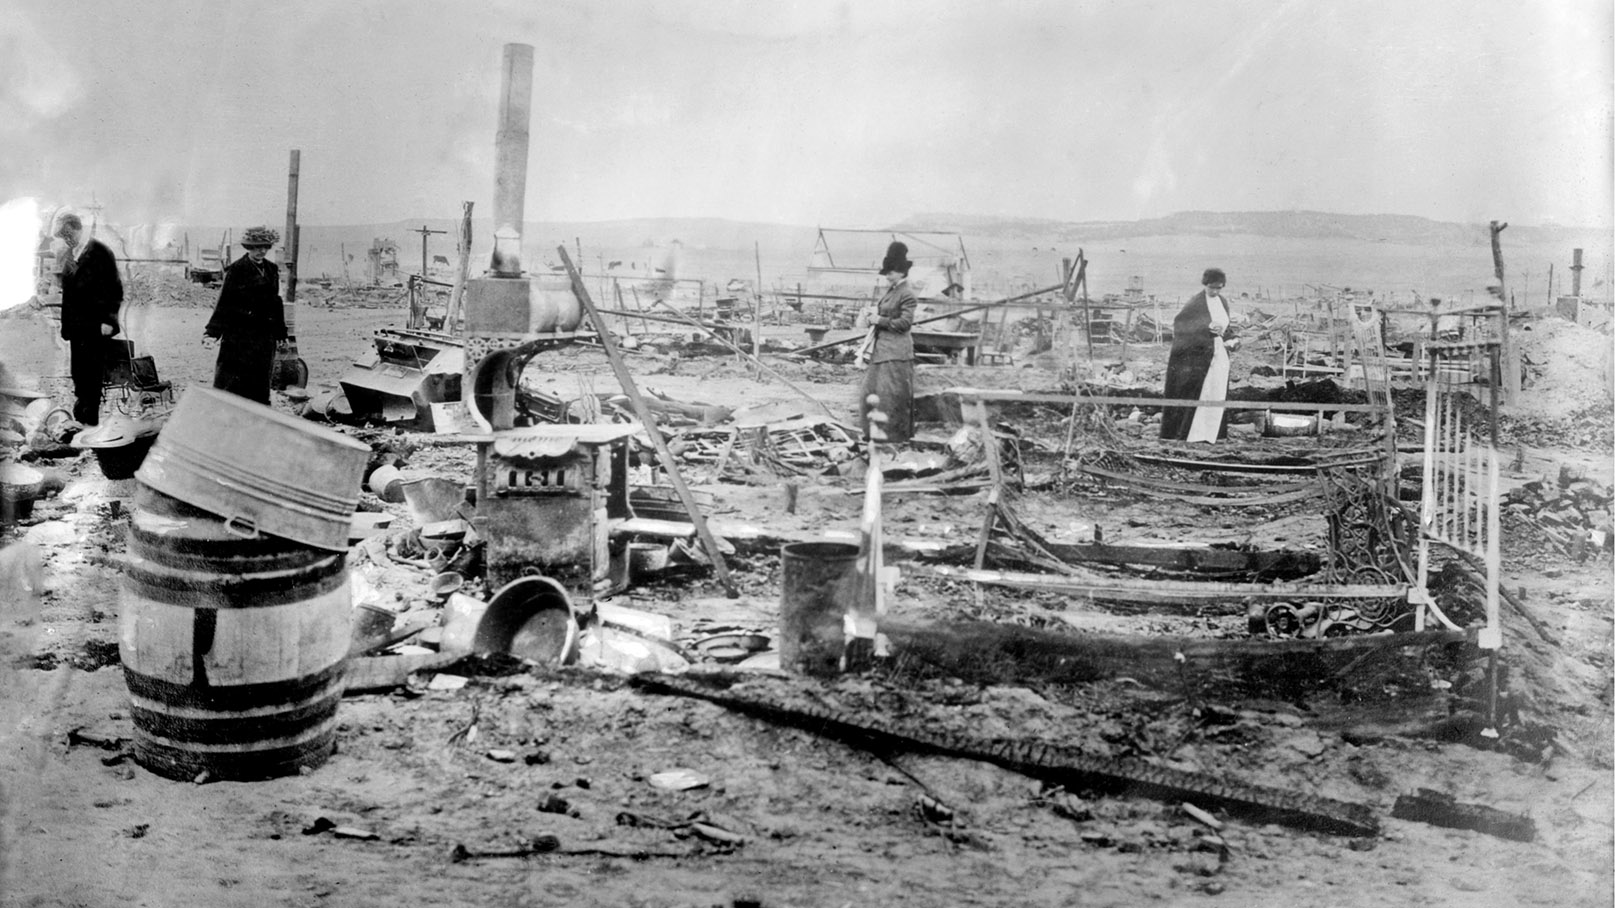 הריסות מחנה כורי הפחם לדלאו לאחר הטבח, 1914 (תמונה מתוך ויקימדיה)